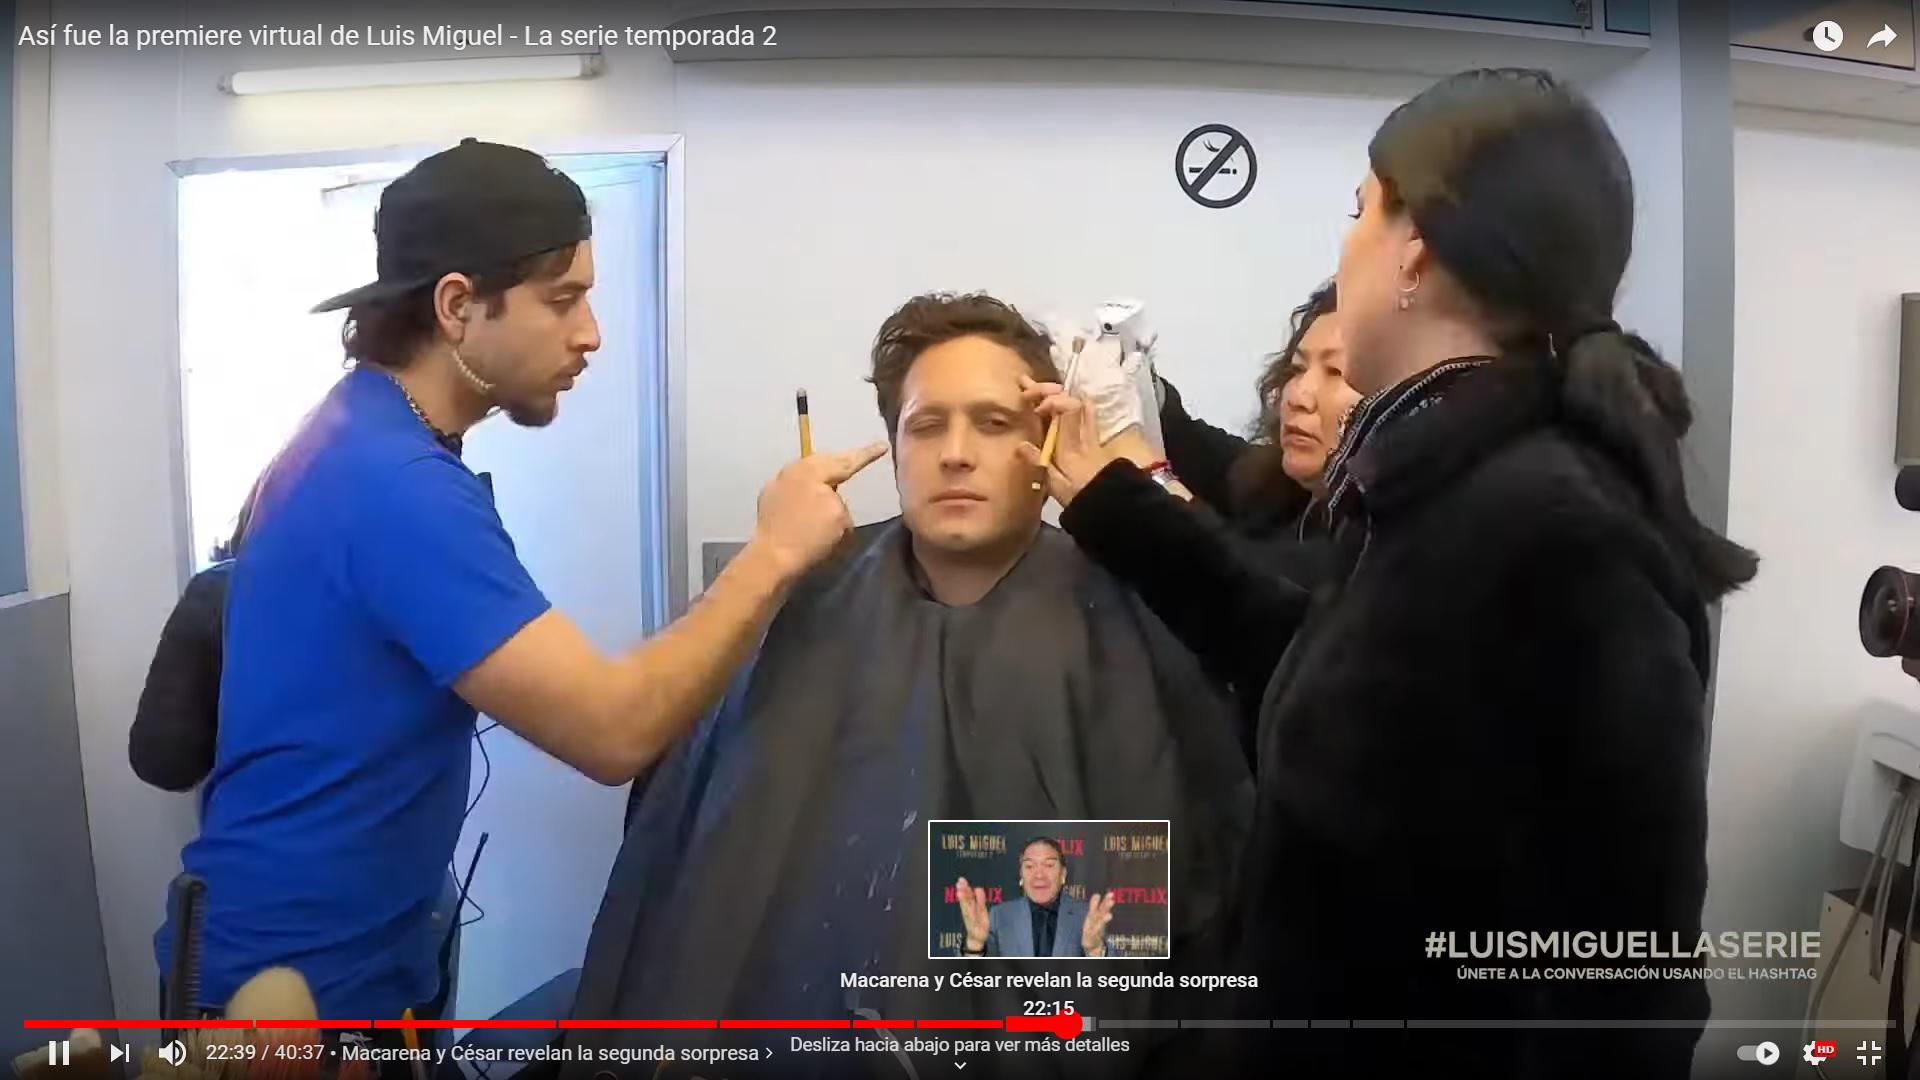 $!Diego Boneta en el set de maquillaje que lo caracteriza como Luis Miguel maduro.